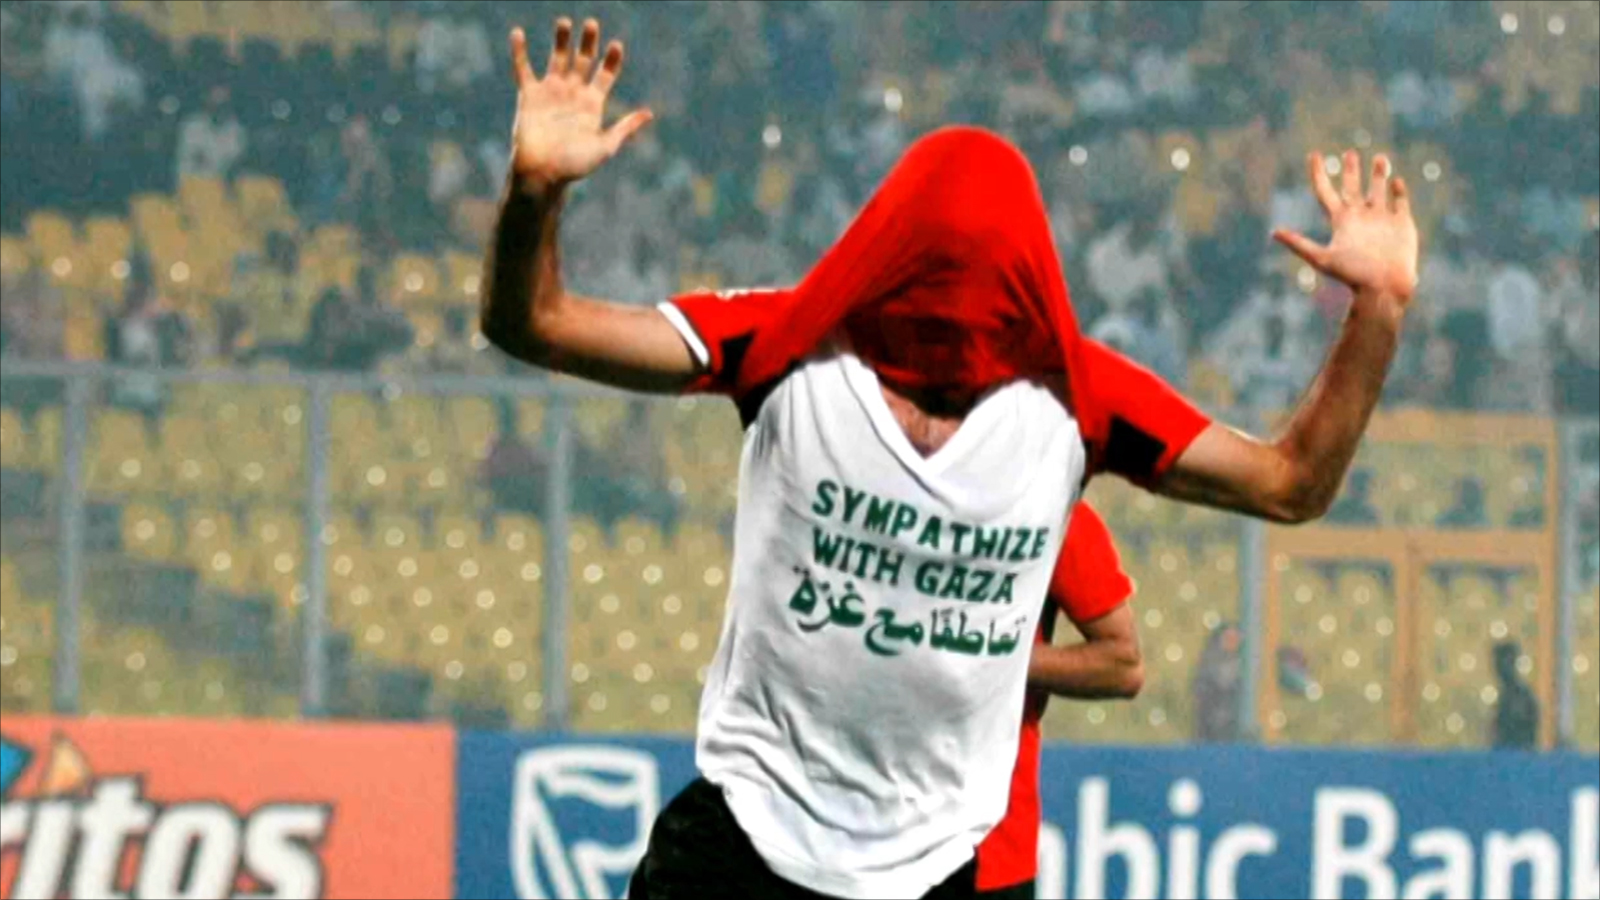 ‪كرة القدم لم تشغل أبو تريكة عن قضايا أمته‬ كرة القدم لم تشغل أبو تريكة عن قضايا أمته (الجزيرة)